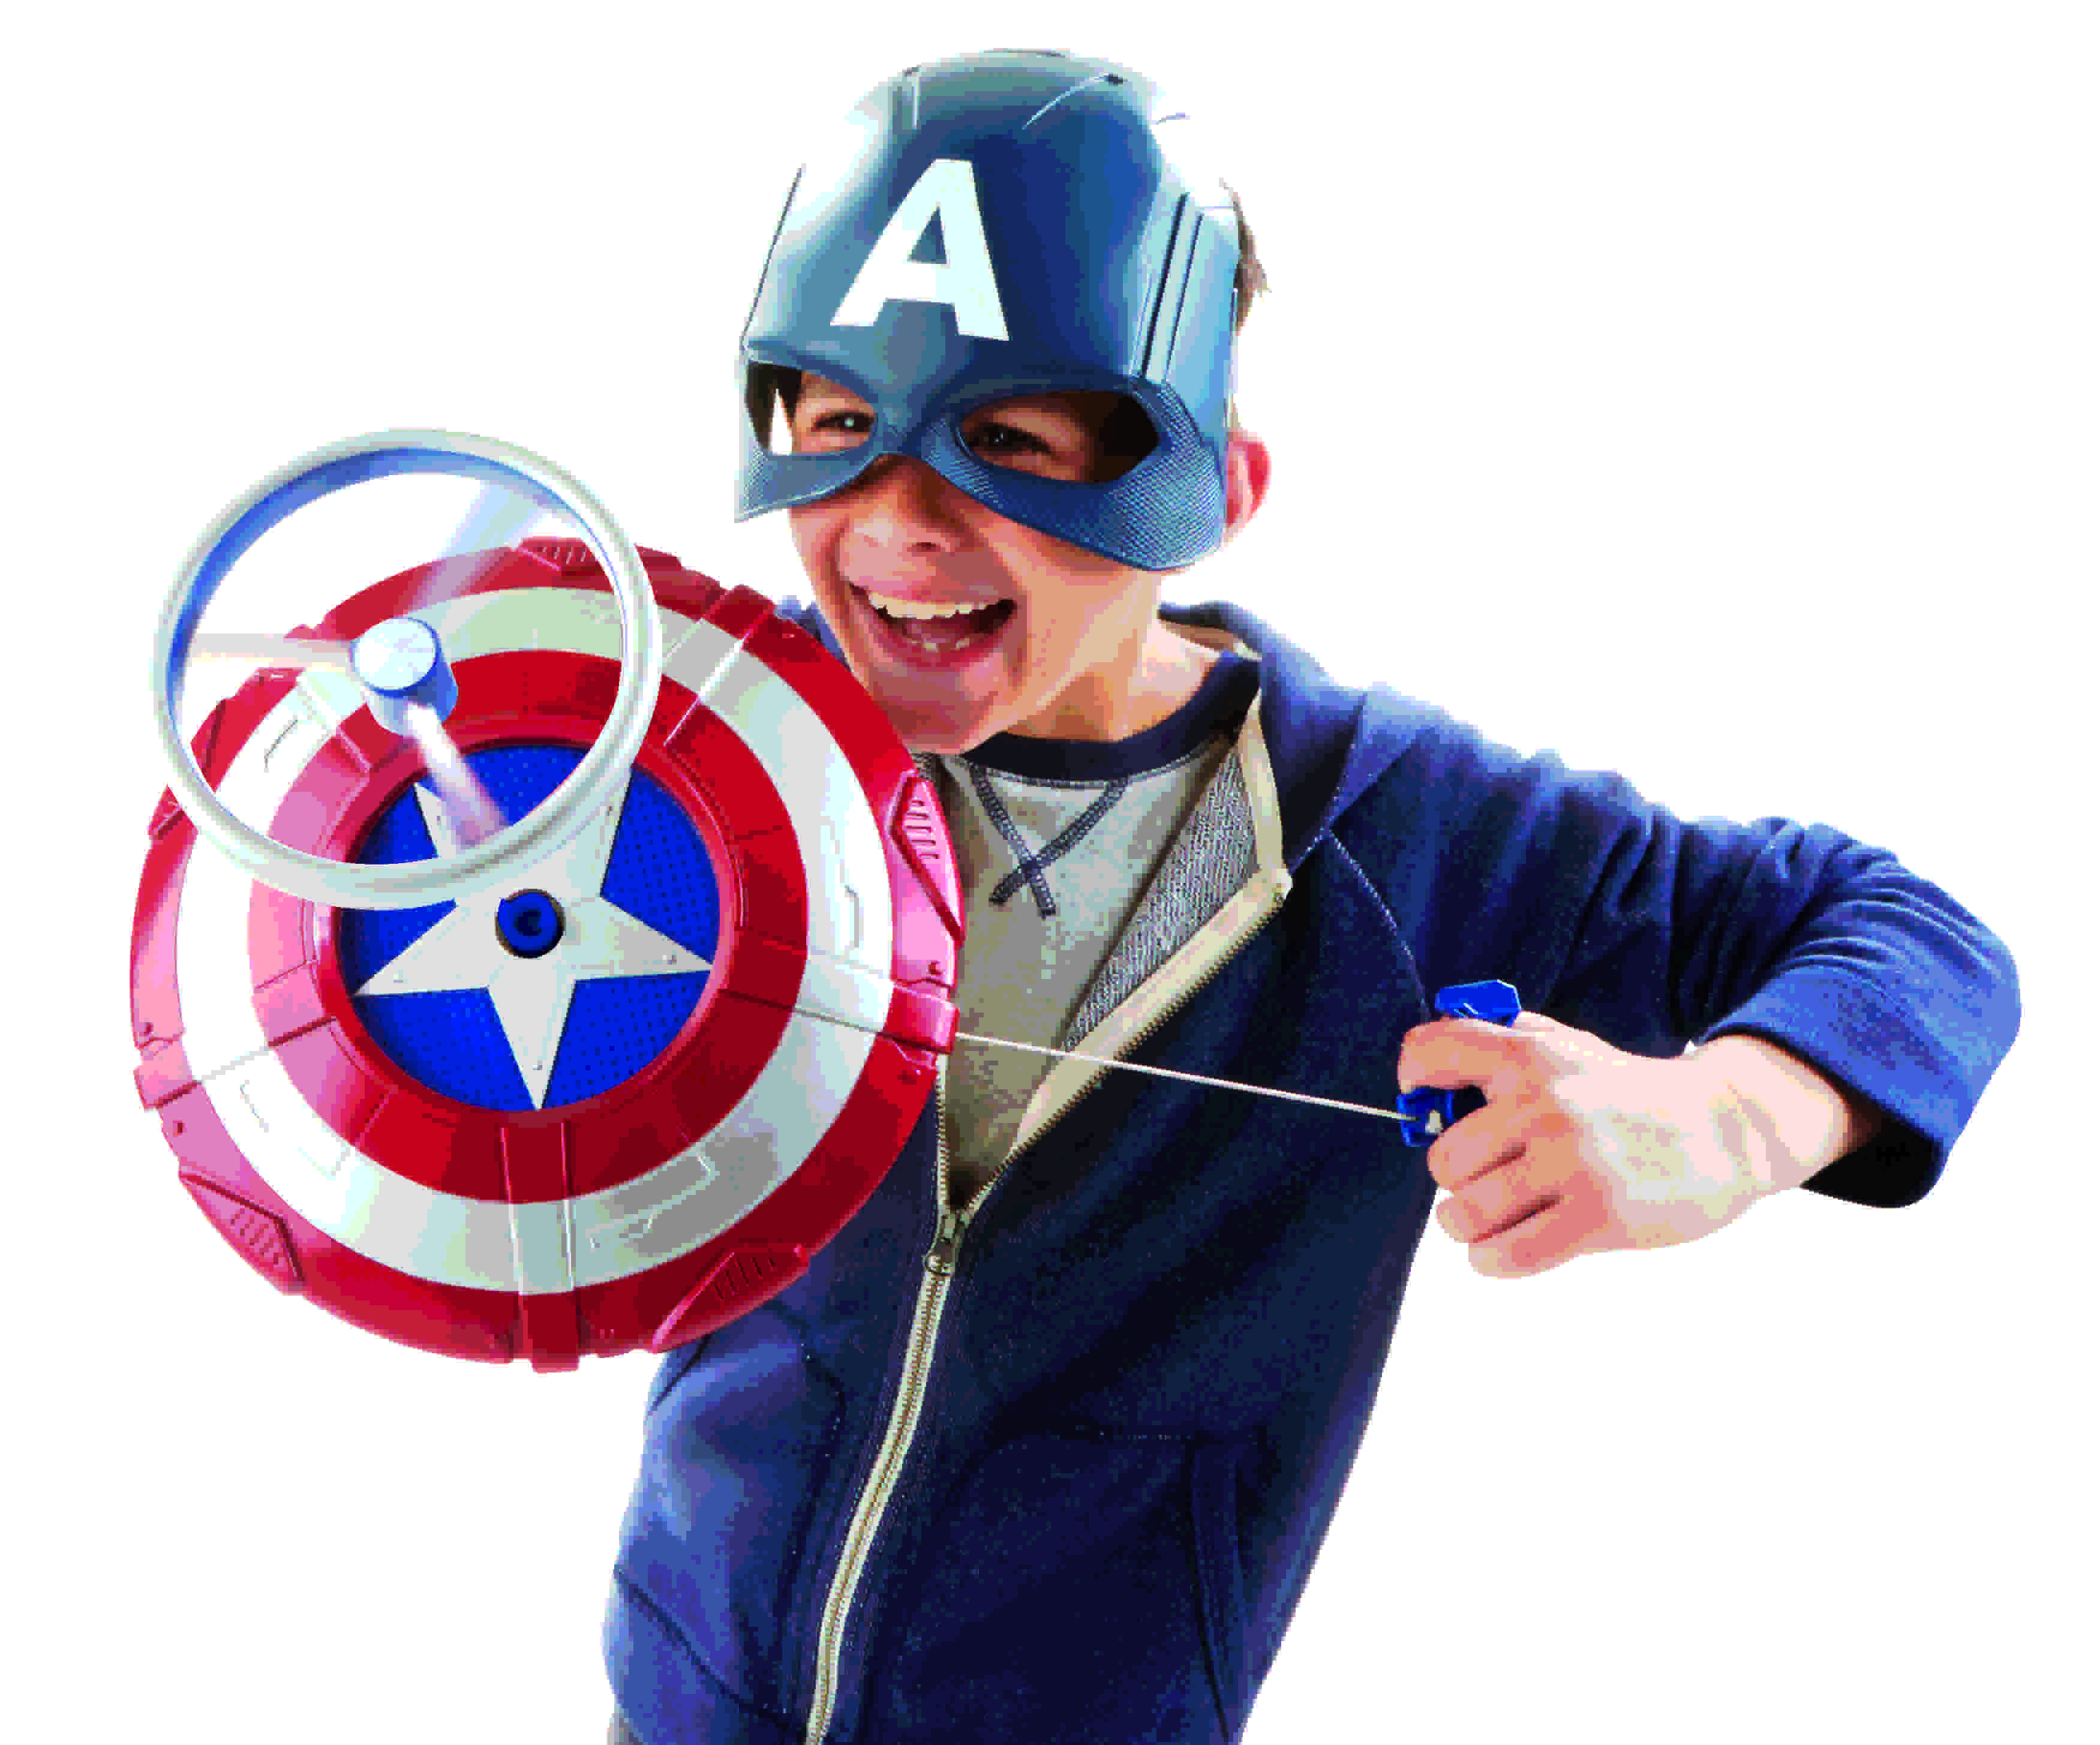 Carnevale 2015, le maschere degli eroi Marvel